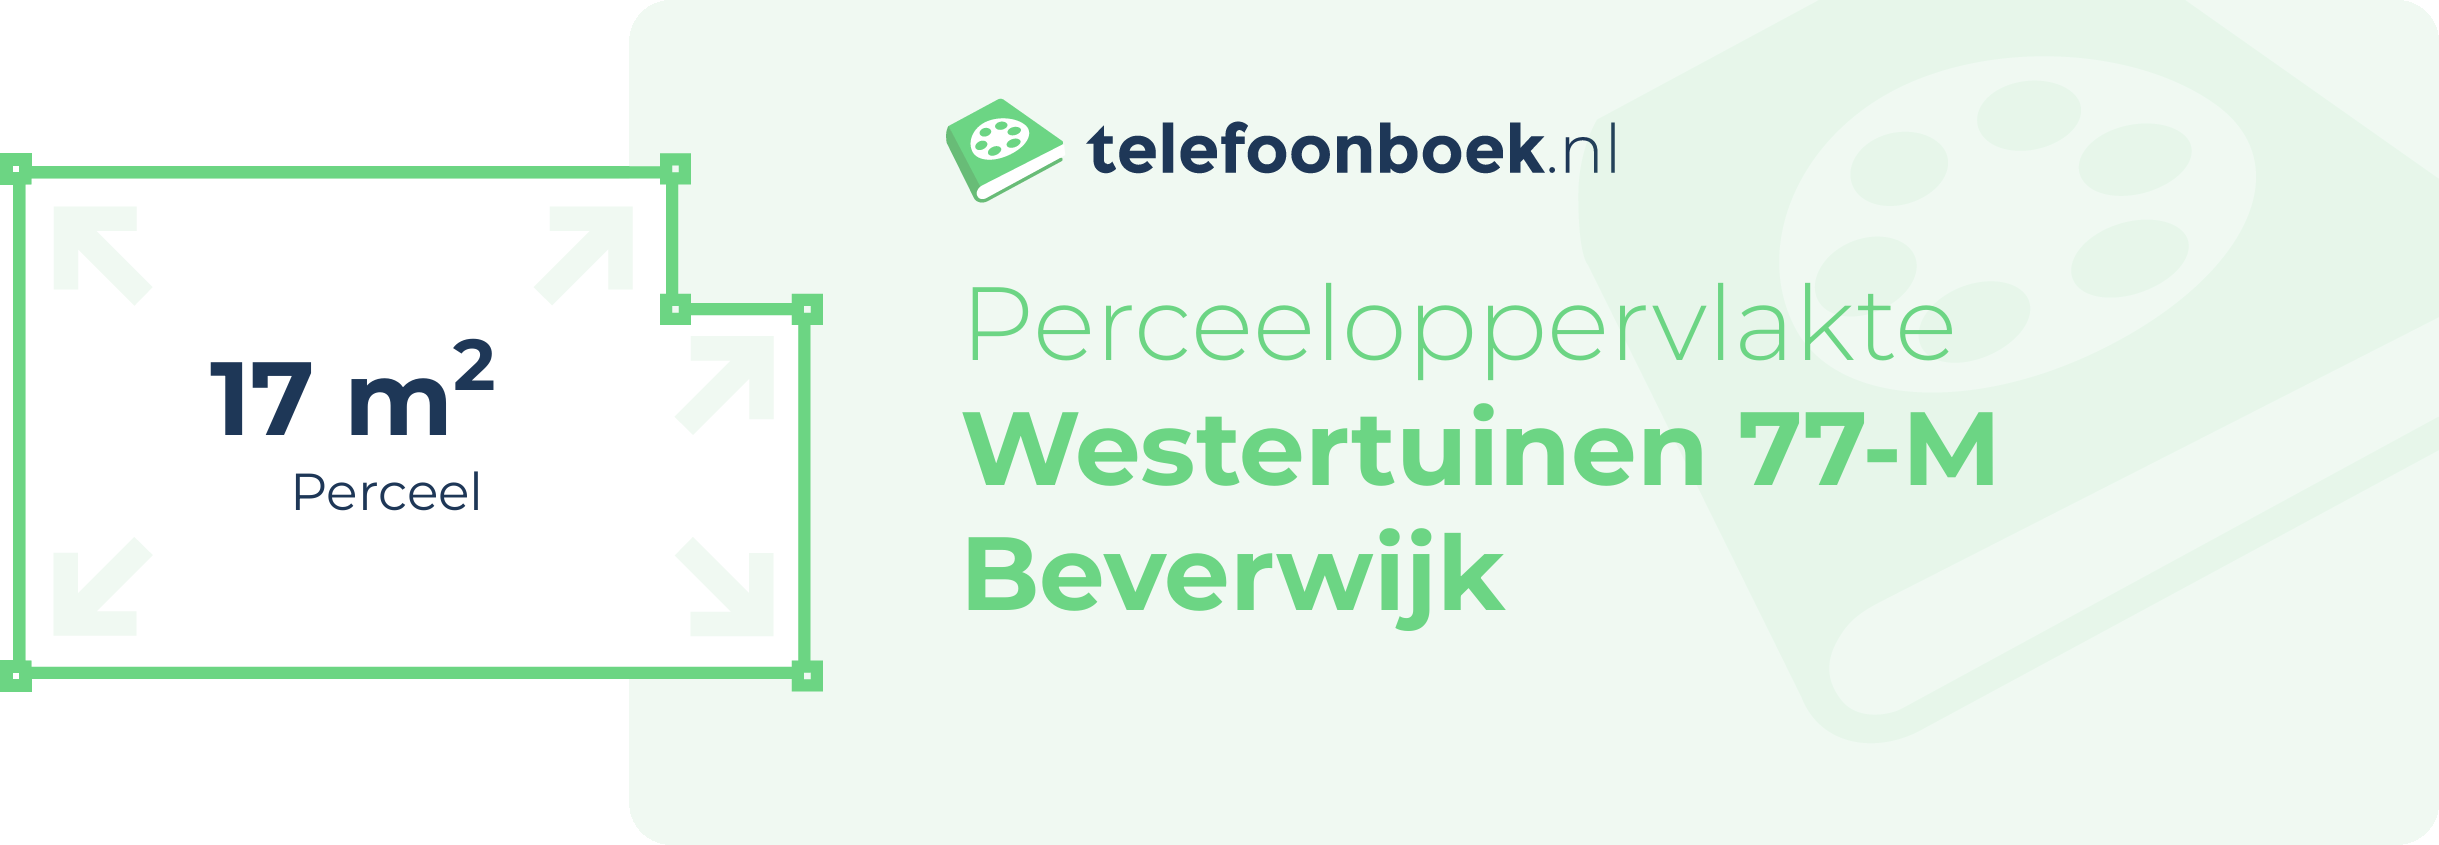 Perceeloppervlakte Westertuinen 77-M Beverwijk